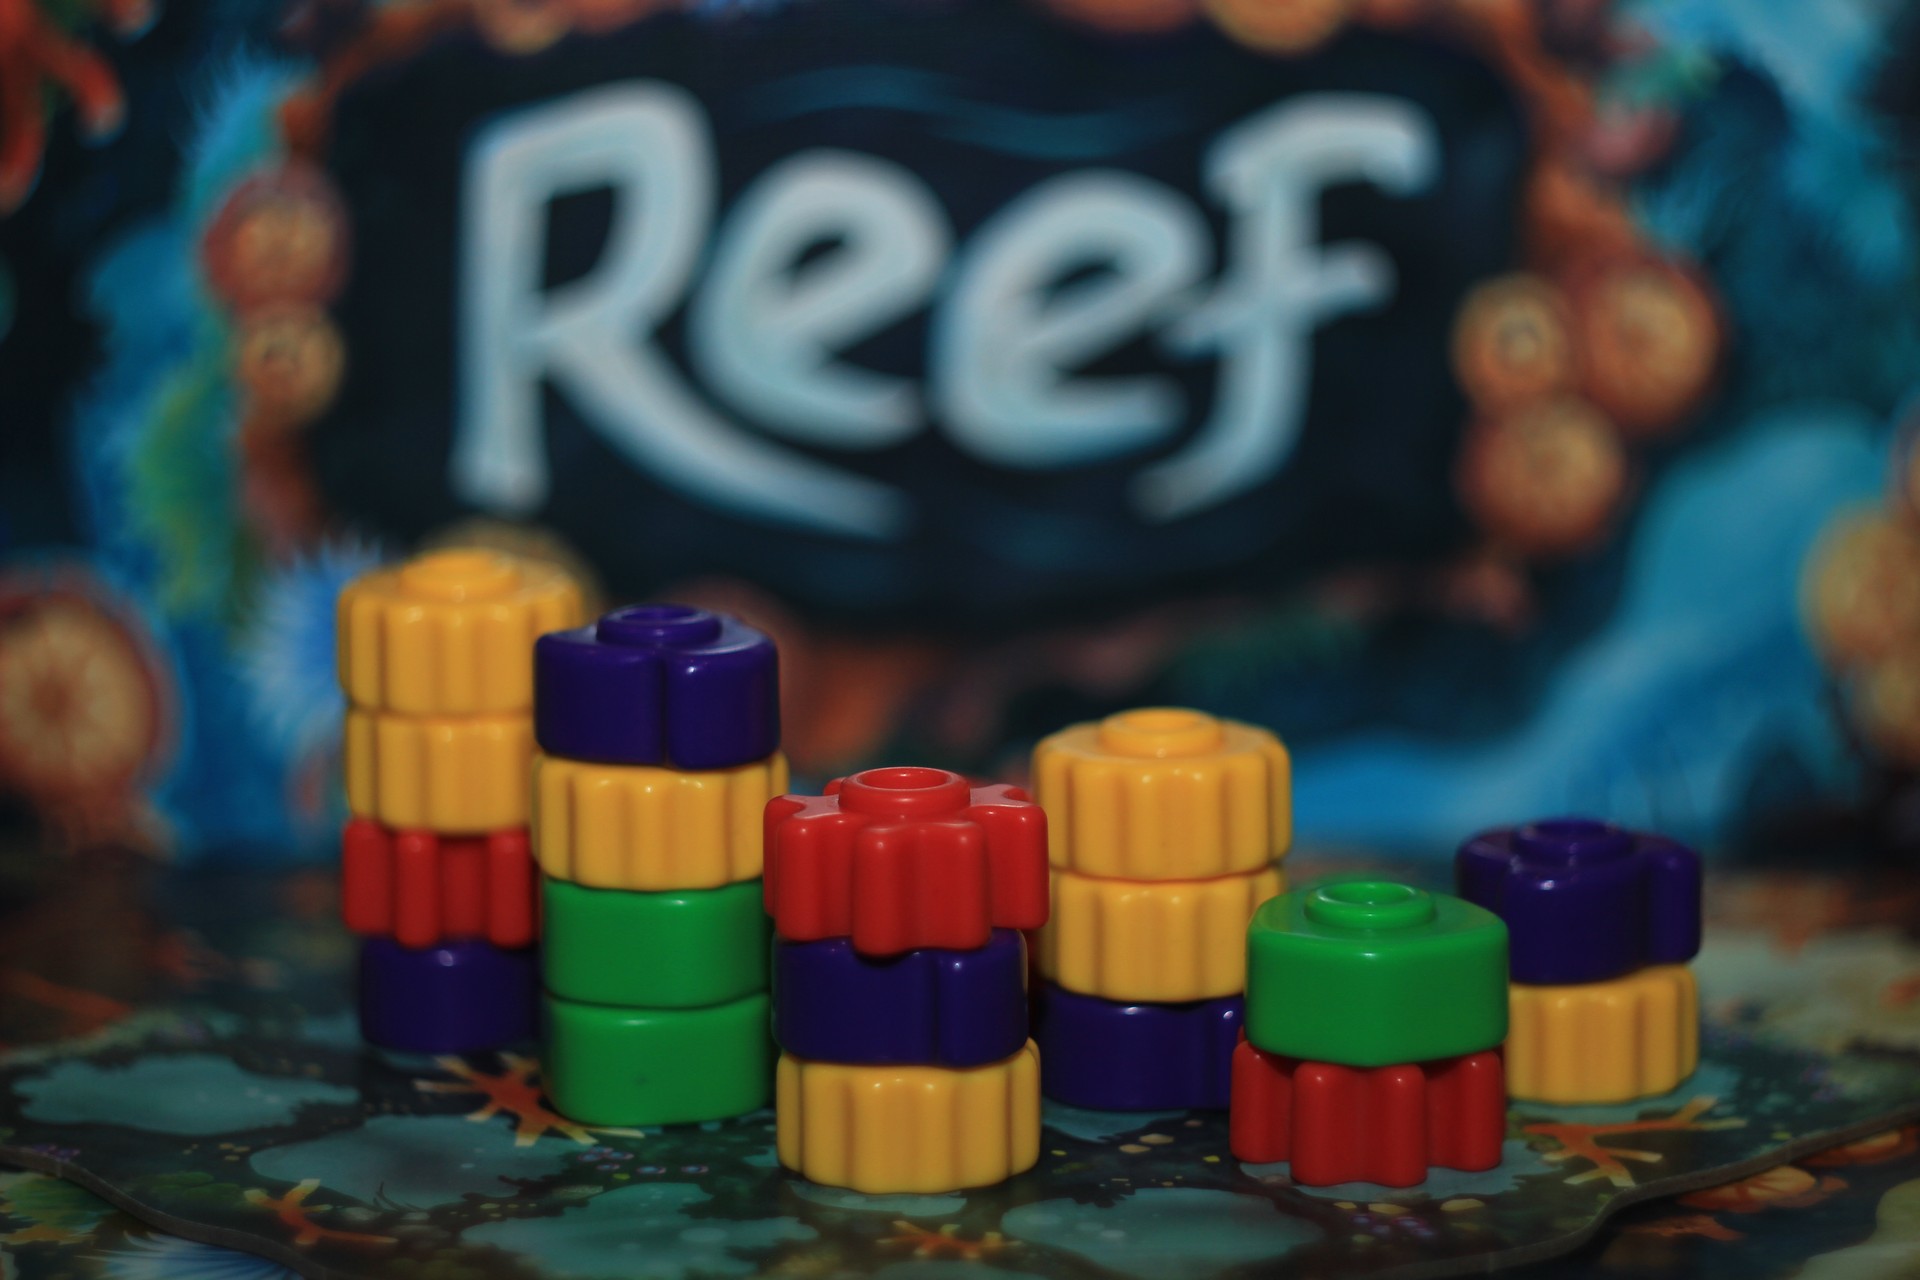 Reef - recenzja gry rodzinnej